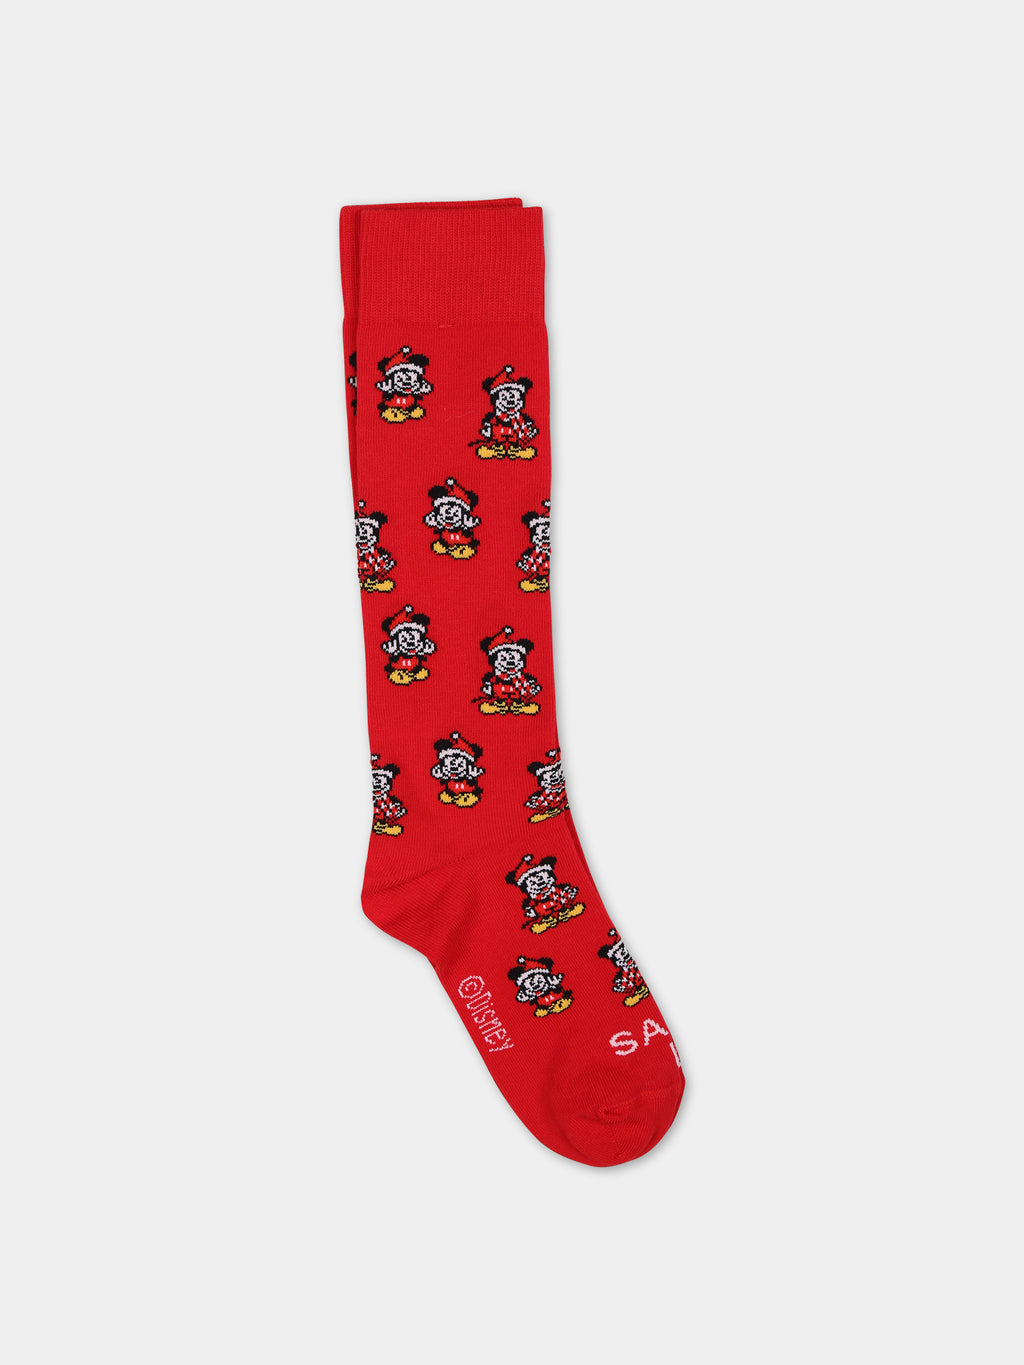 Chaussettes rouges pour enfants avec Mickey Mouse